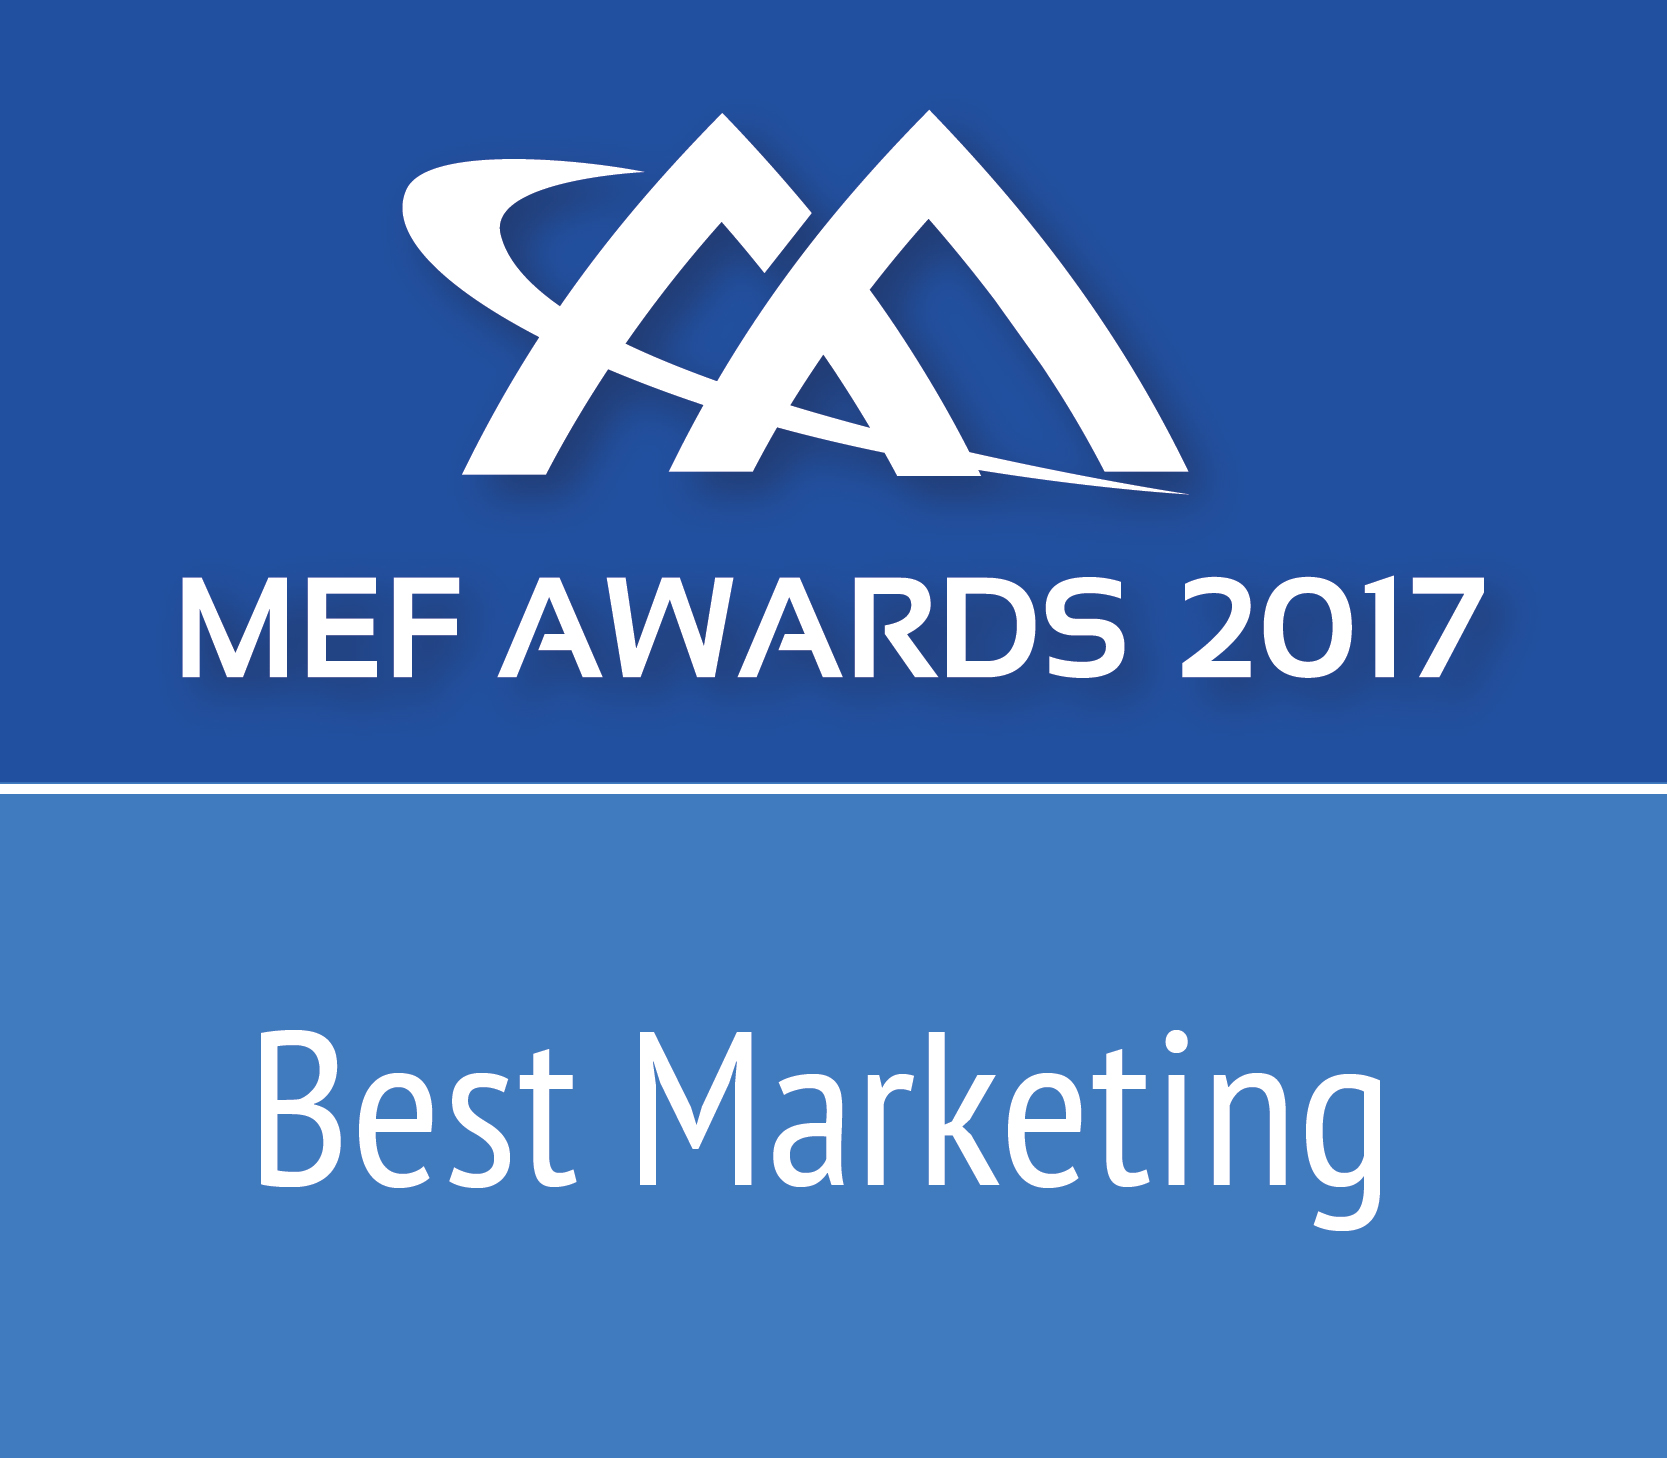 MEFAward2017_BestMarketing_Worldwide_r1